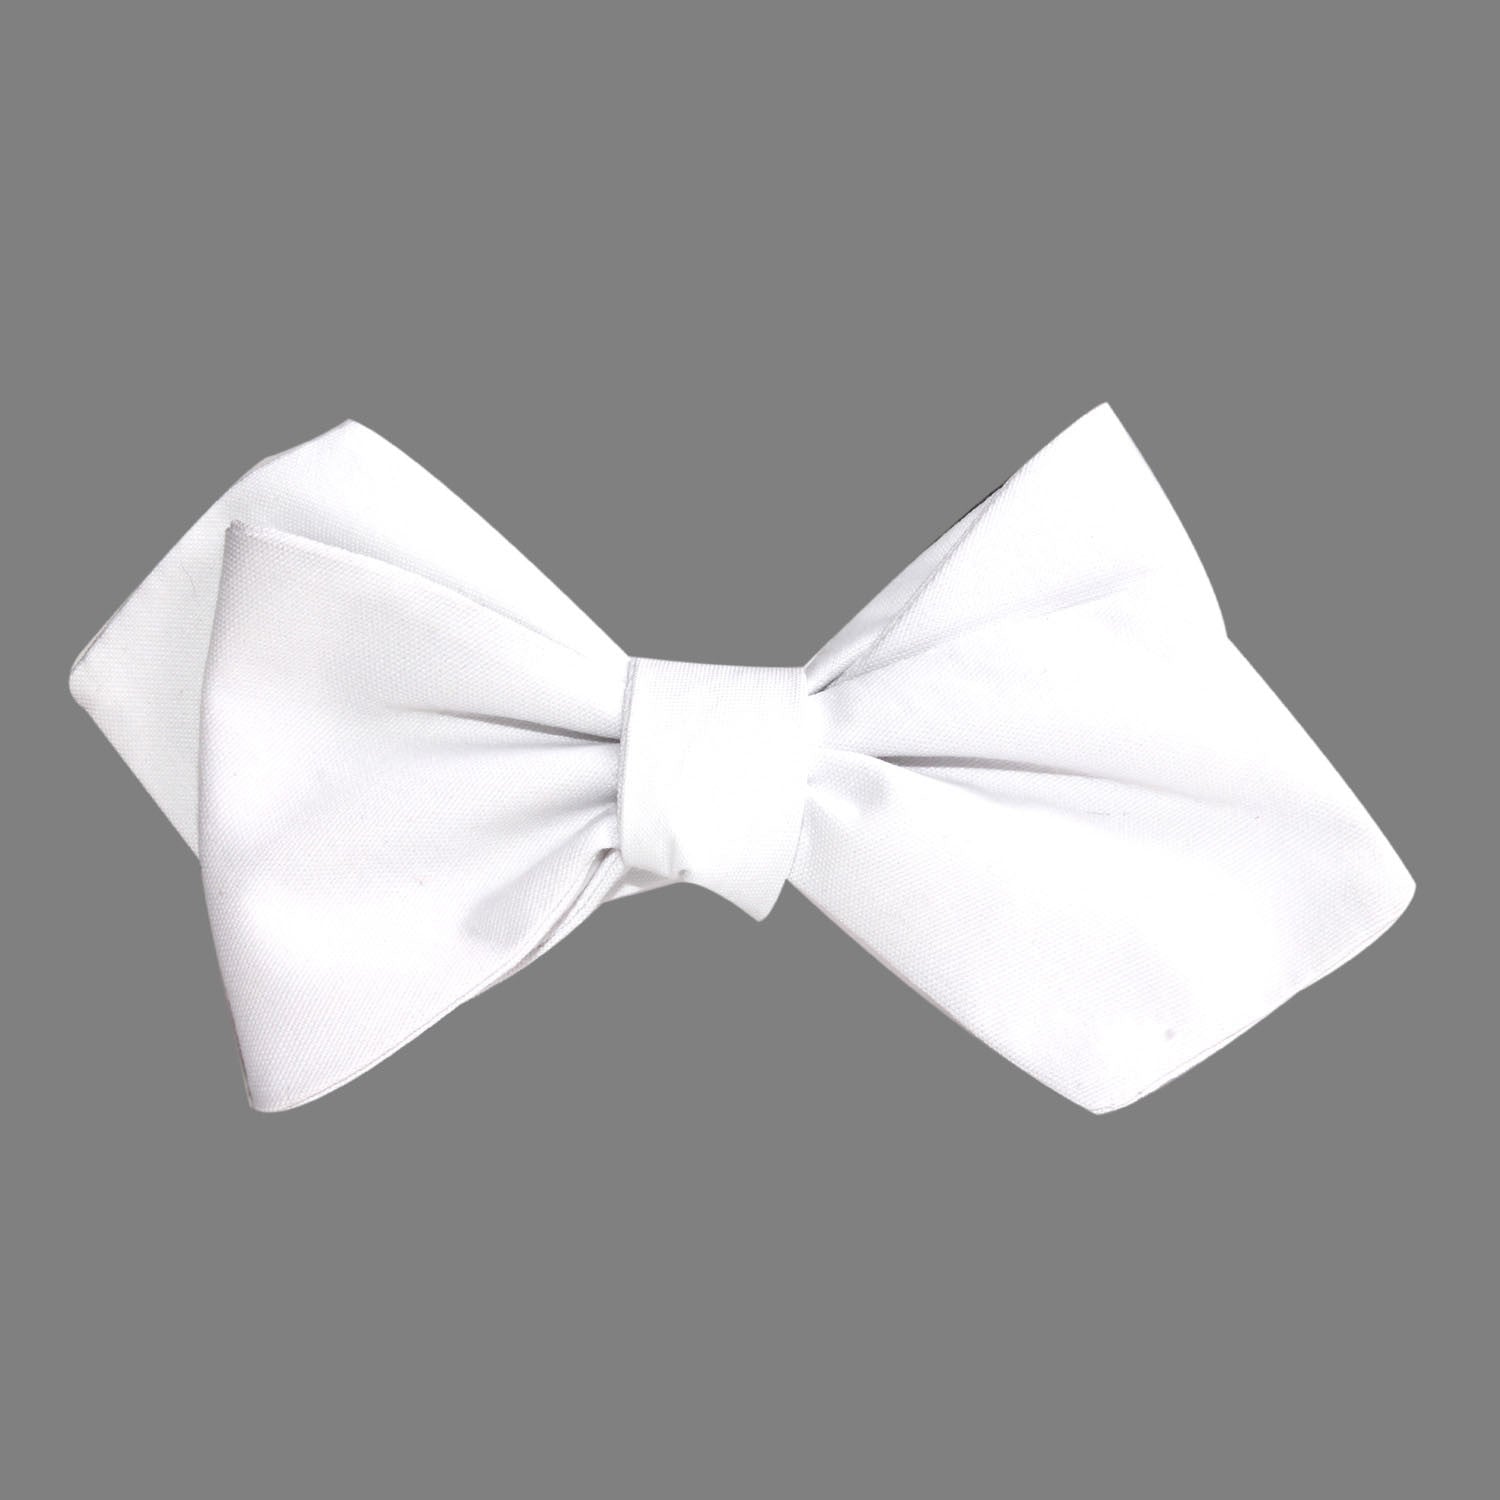 The OTAA White Cotton Self Tie Diamond Tip Bow Tie 1